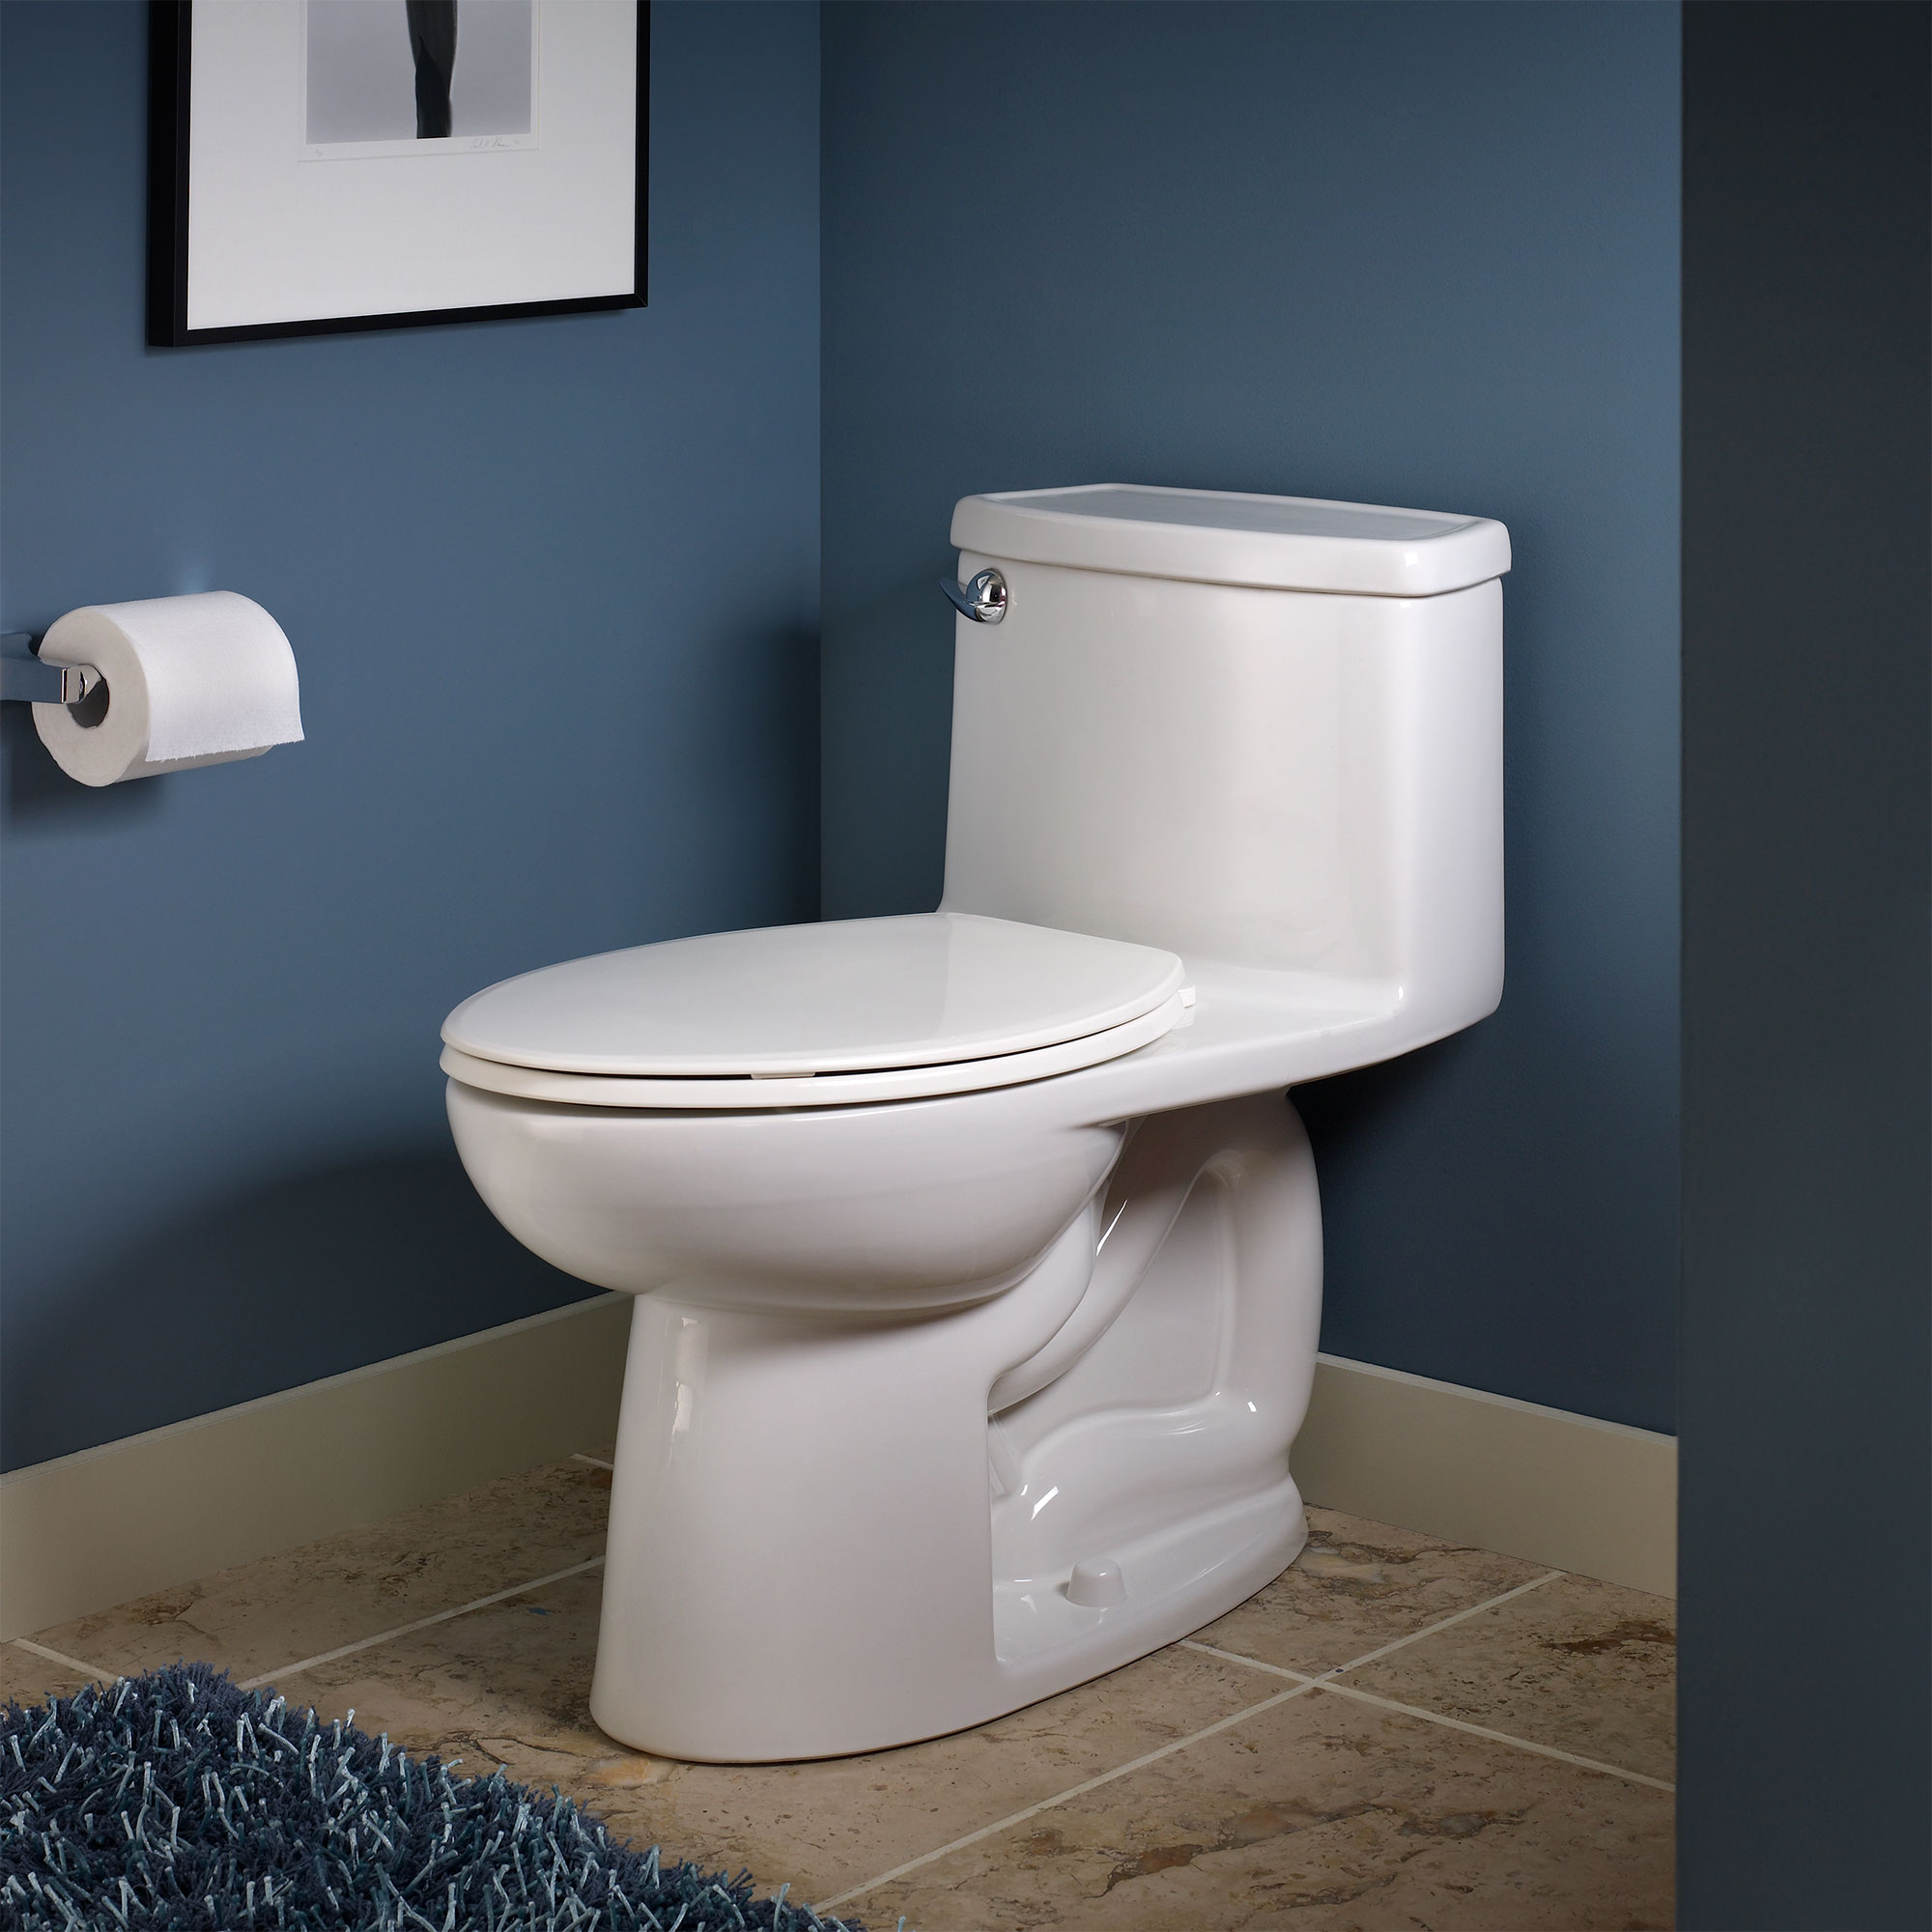 Toilette monopièce compacte Cadet 3, 1,28 gpc/4,8 lpc, à cuvette allongée à hauteur de chaise avec siège